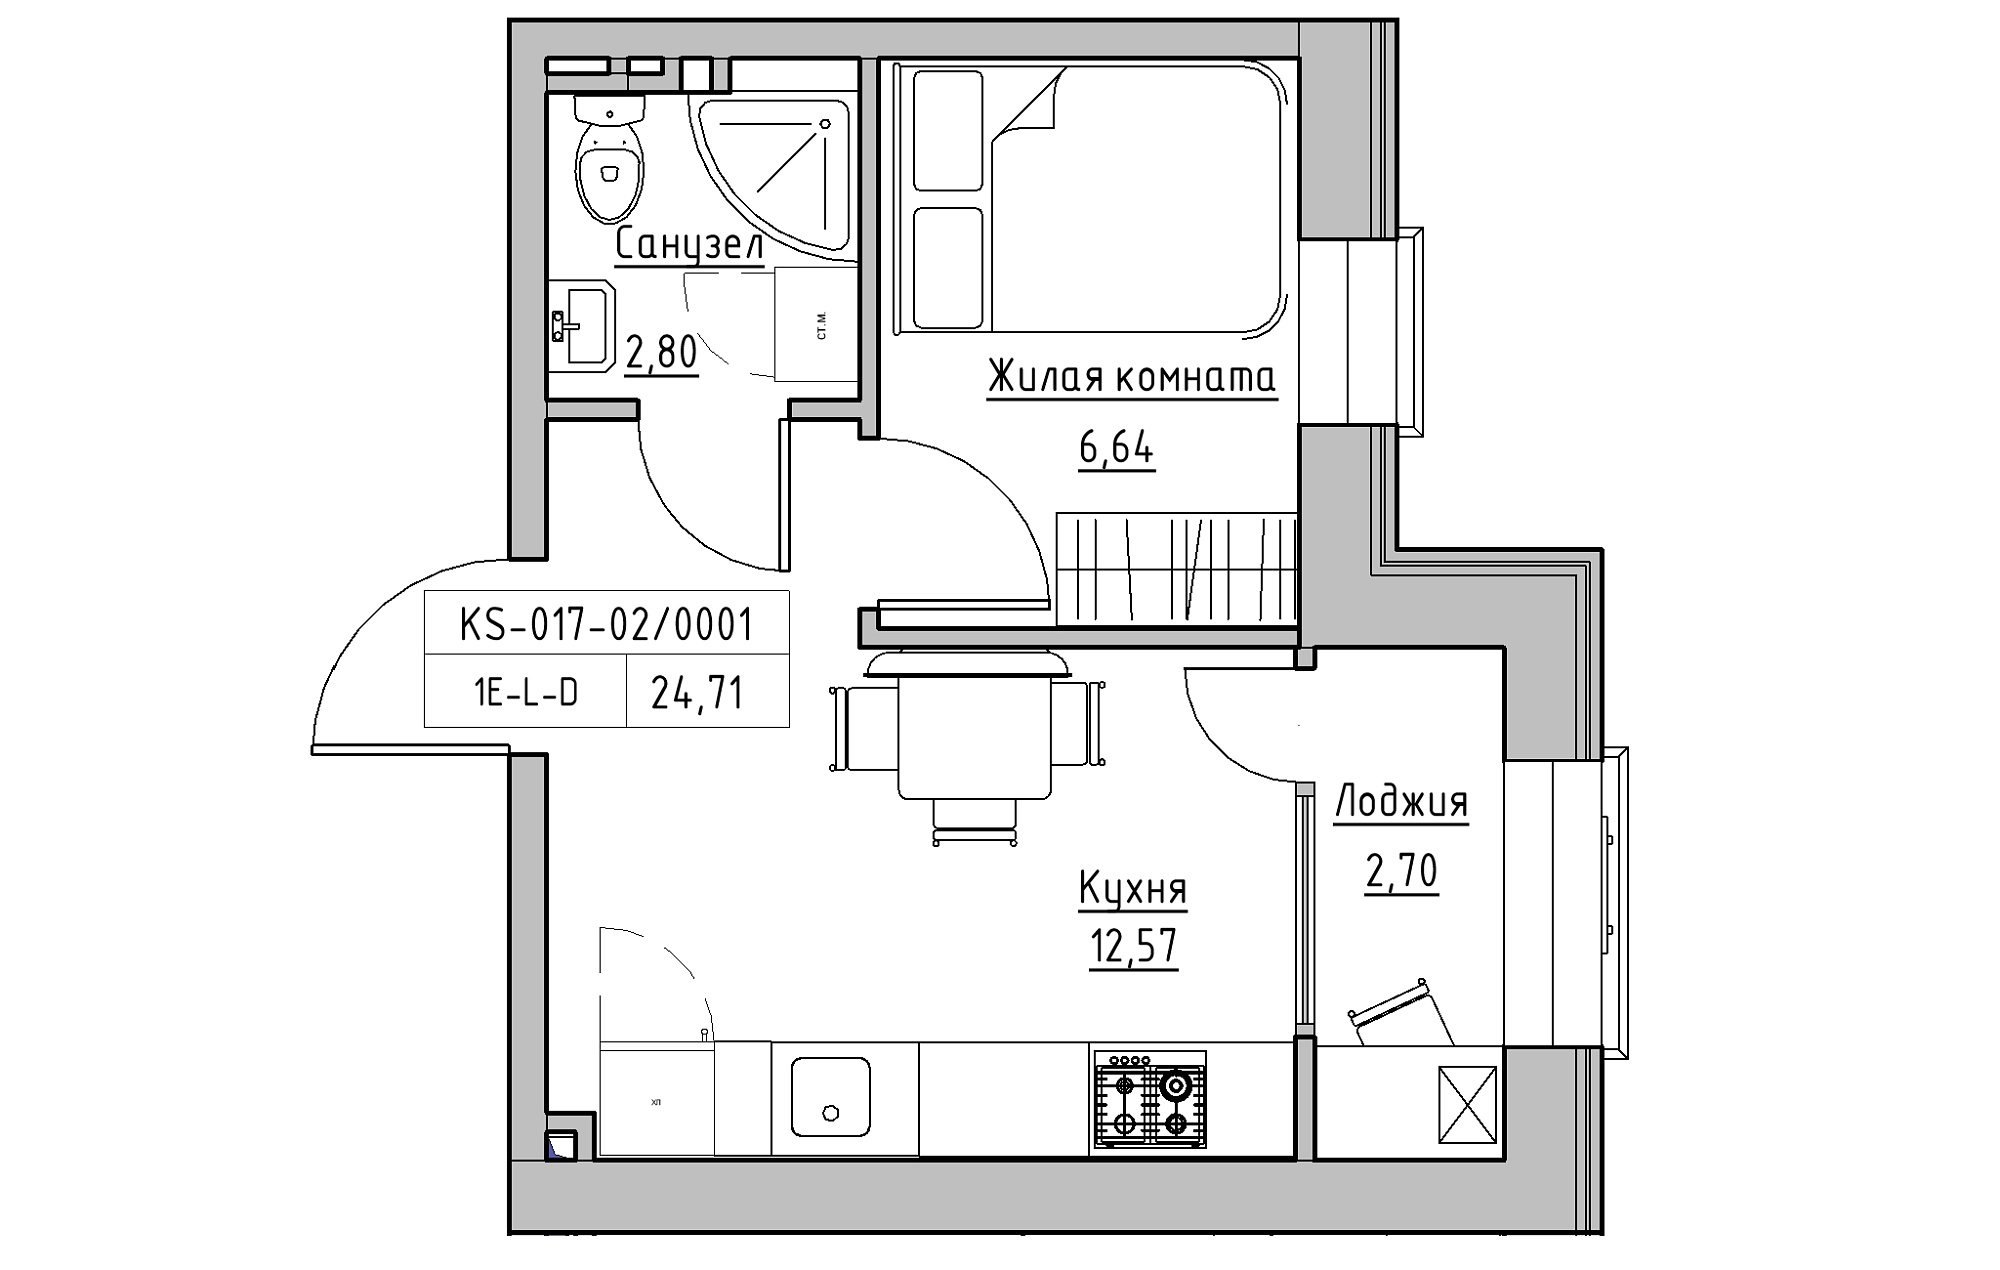 Планування 1-к квартира площею 24.71м2, KS-017-02/0001.